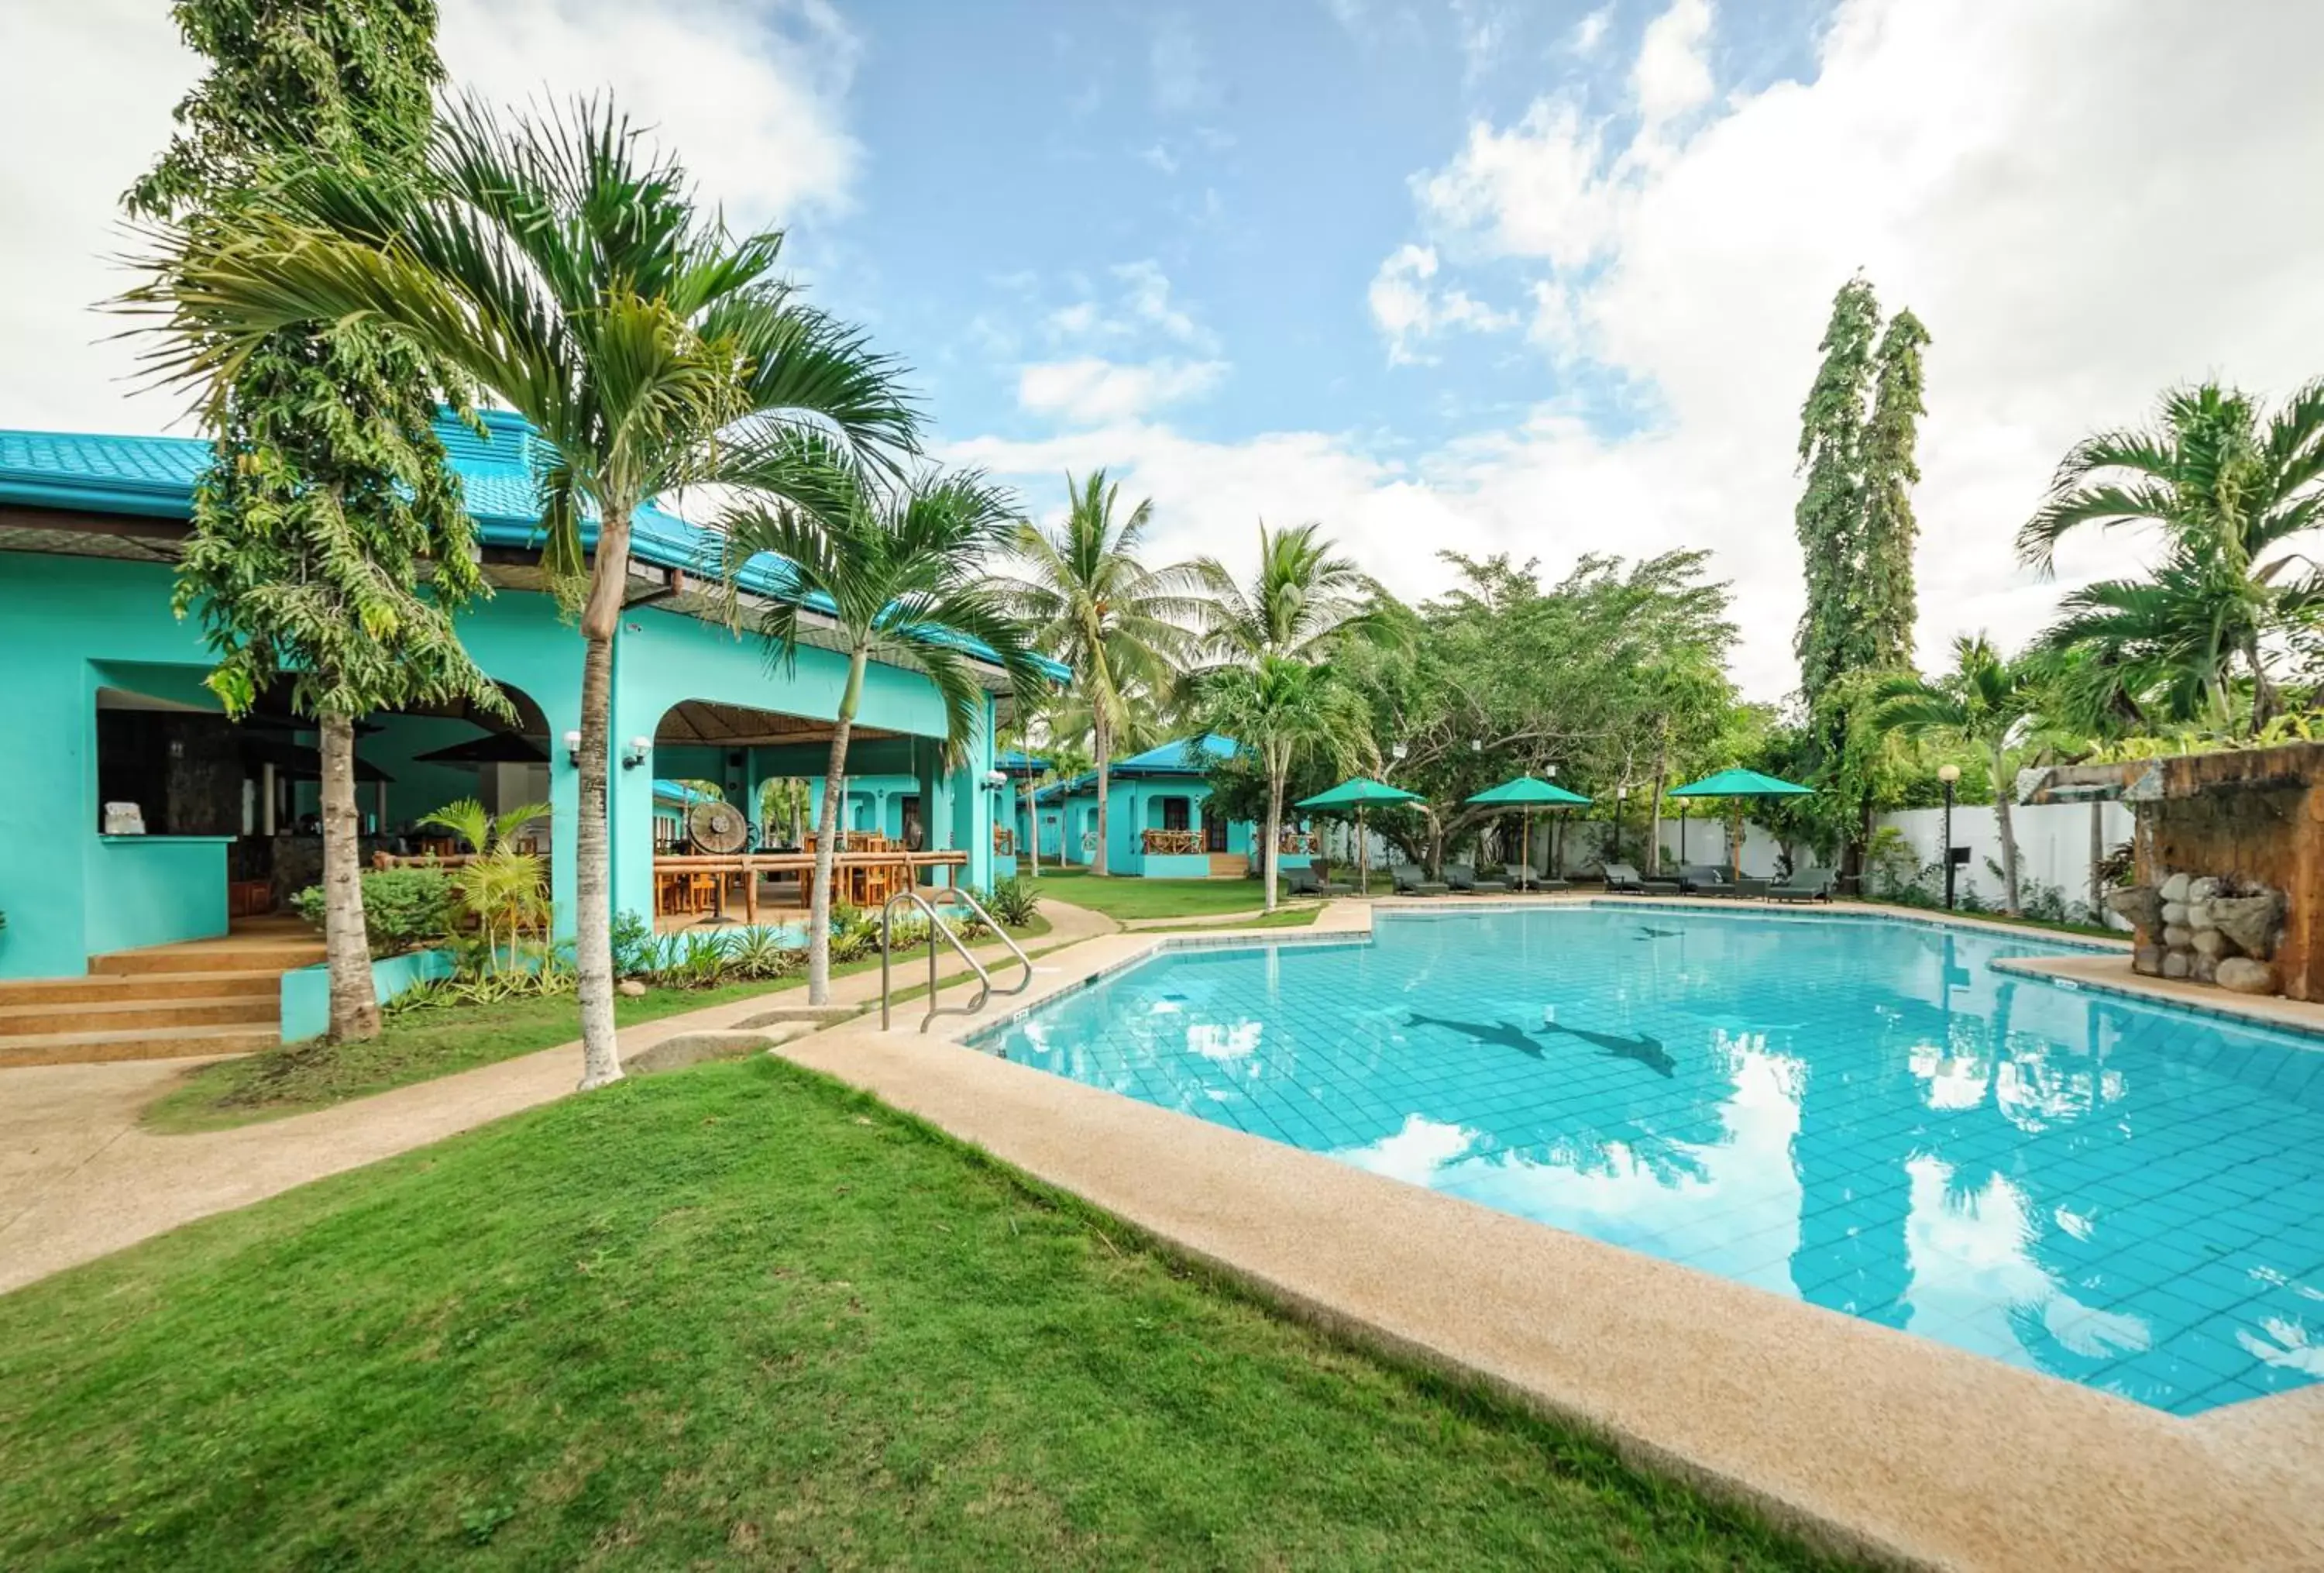 Property building, Swimming Pool in Bohol Sea Resort